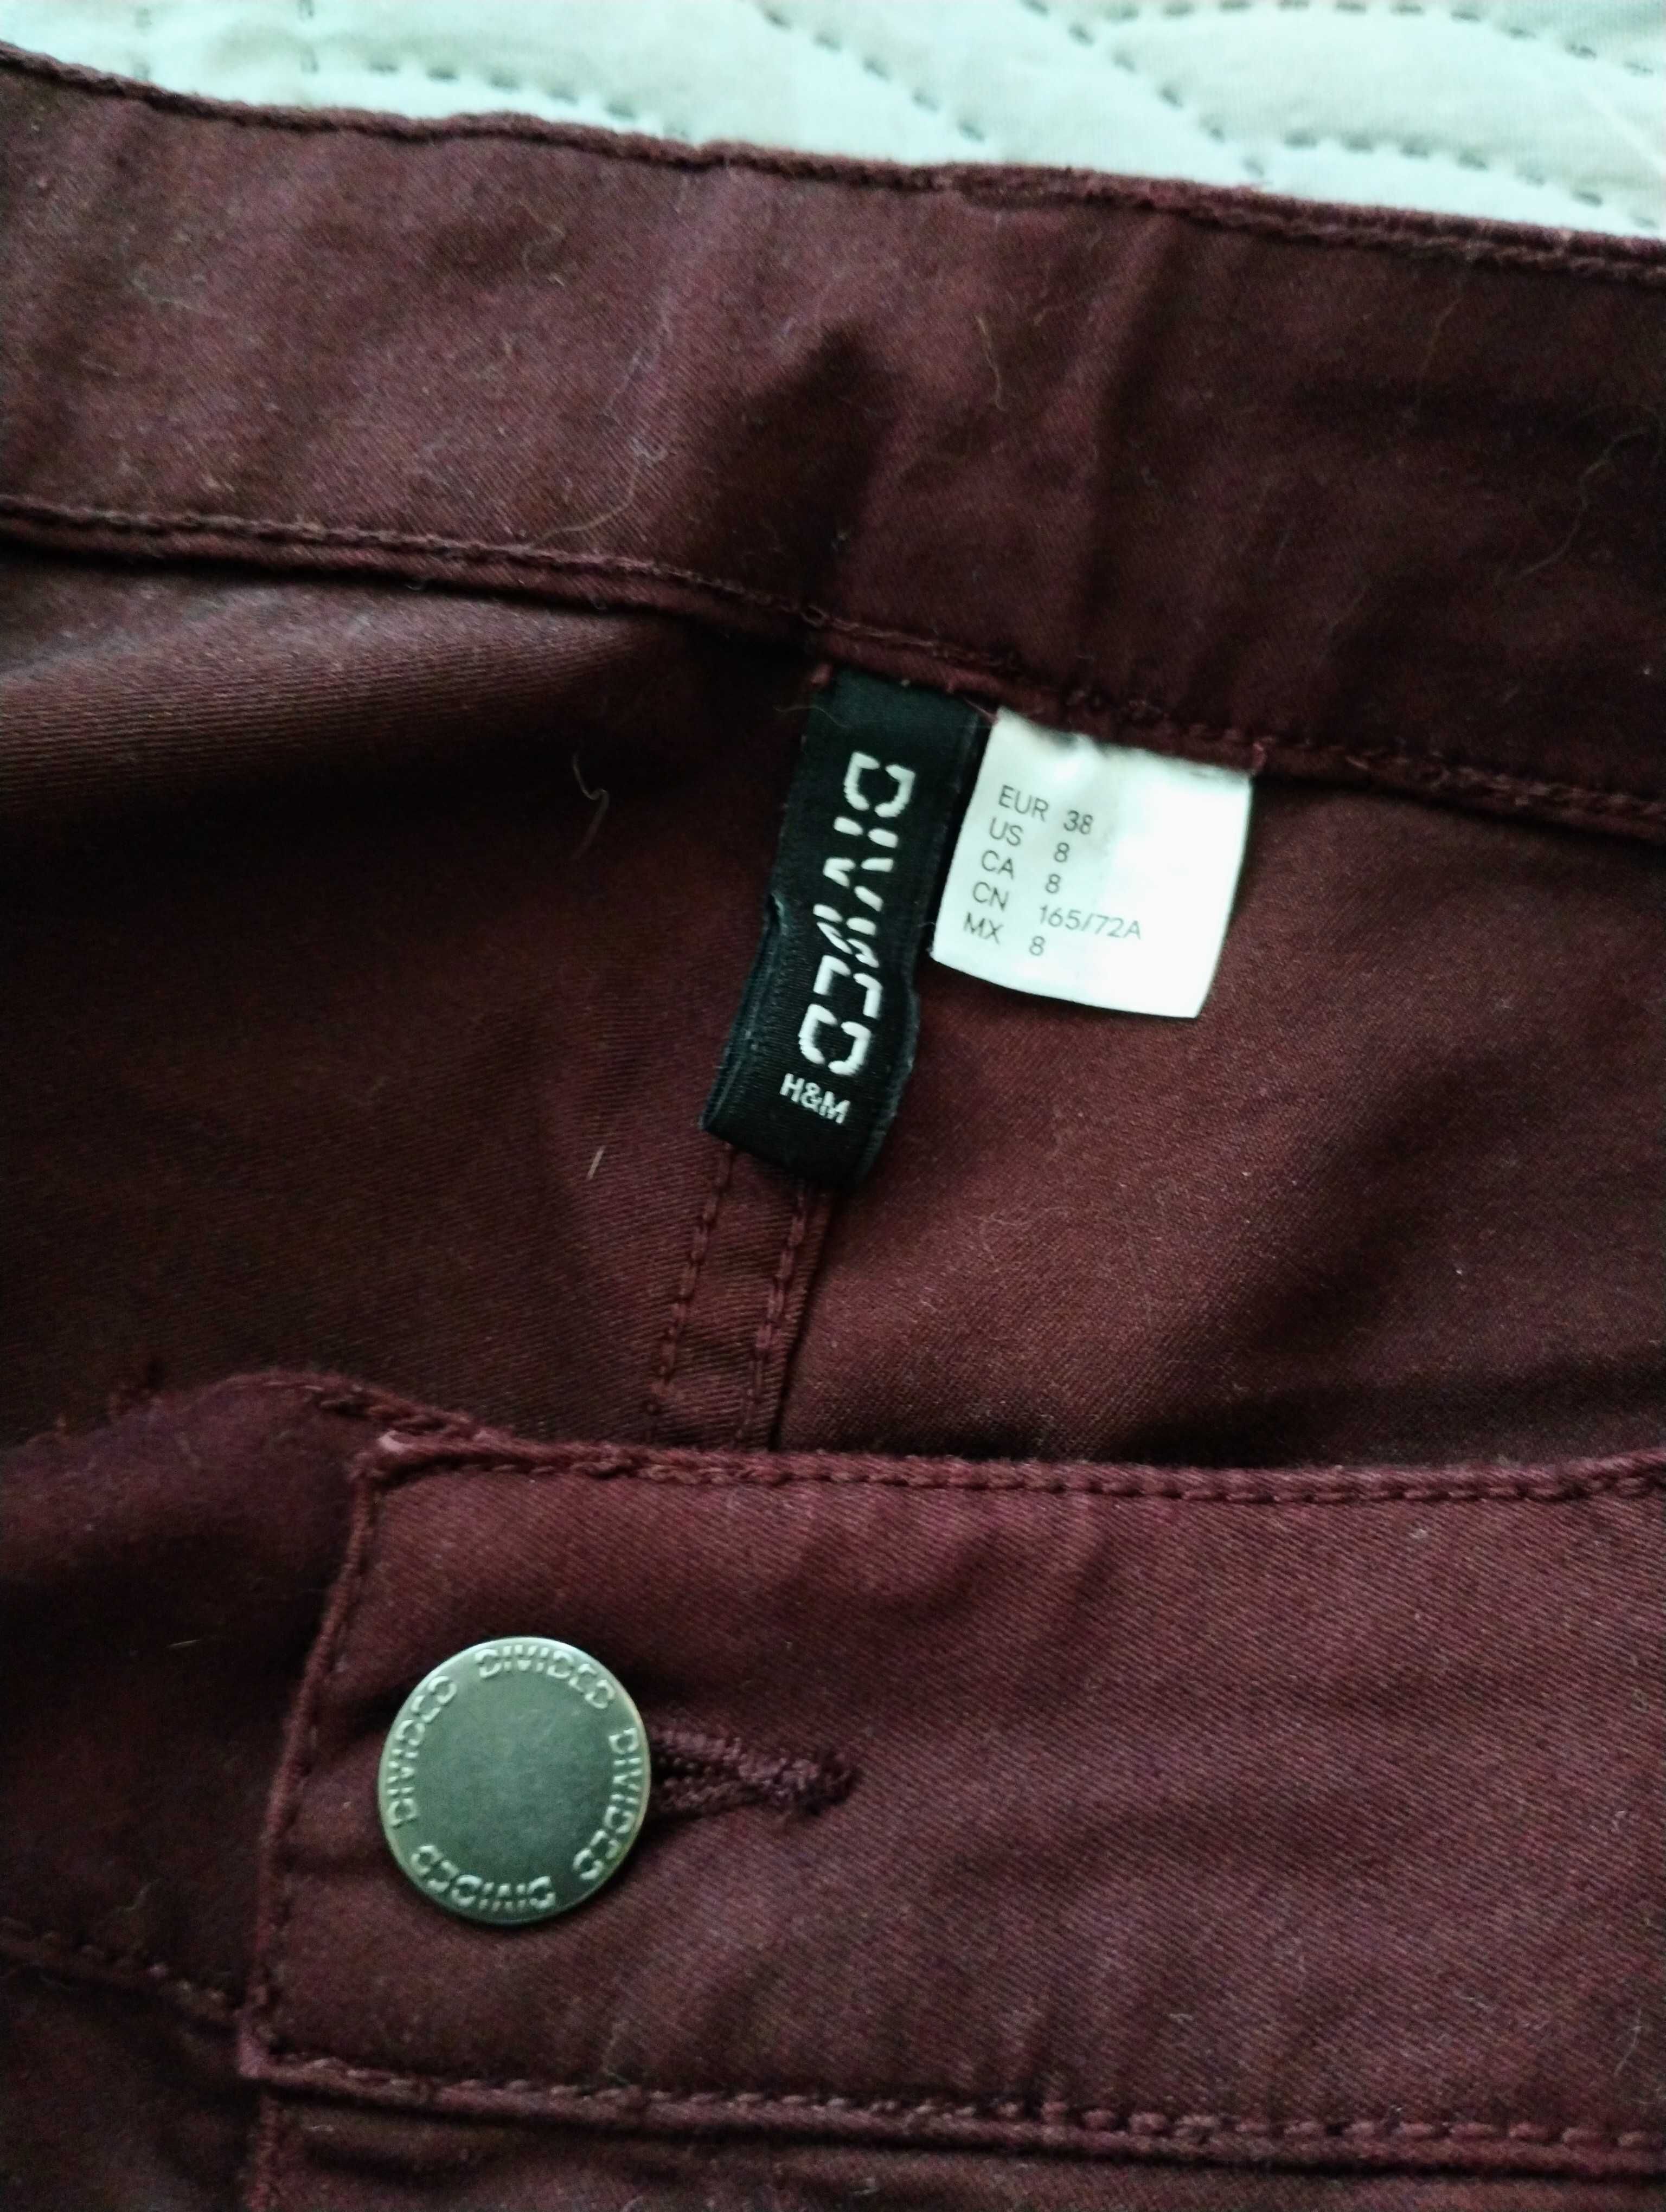 Szorty shorts bordo burgund H&M 38 M wysoki stan